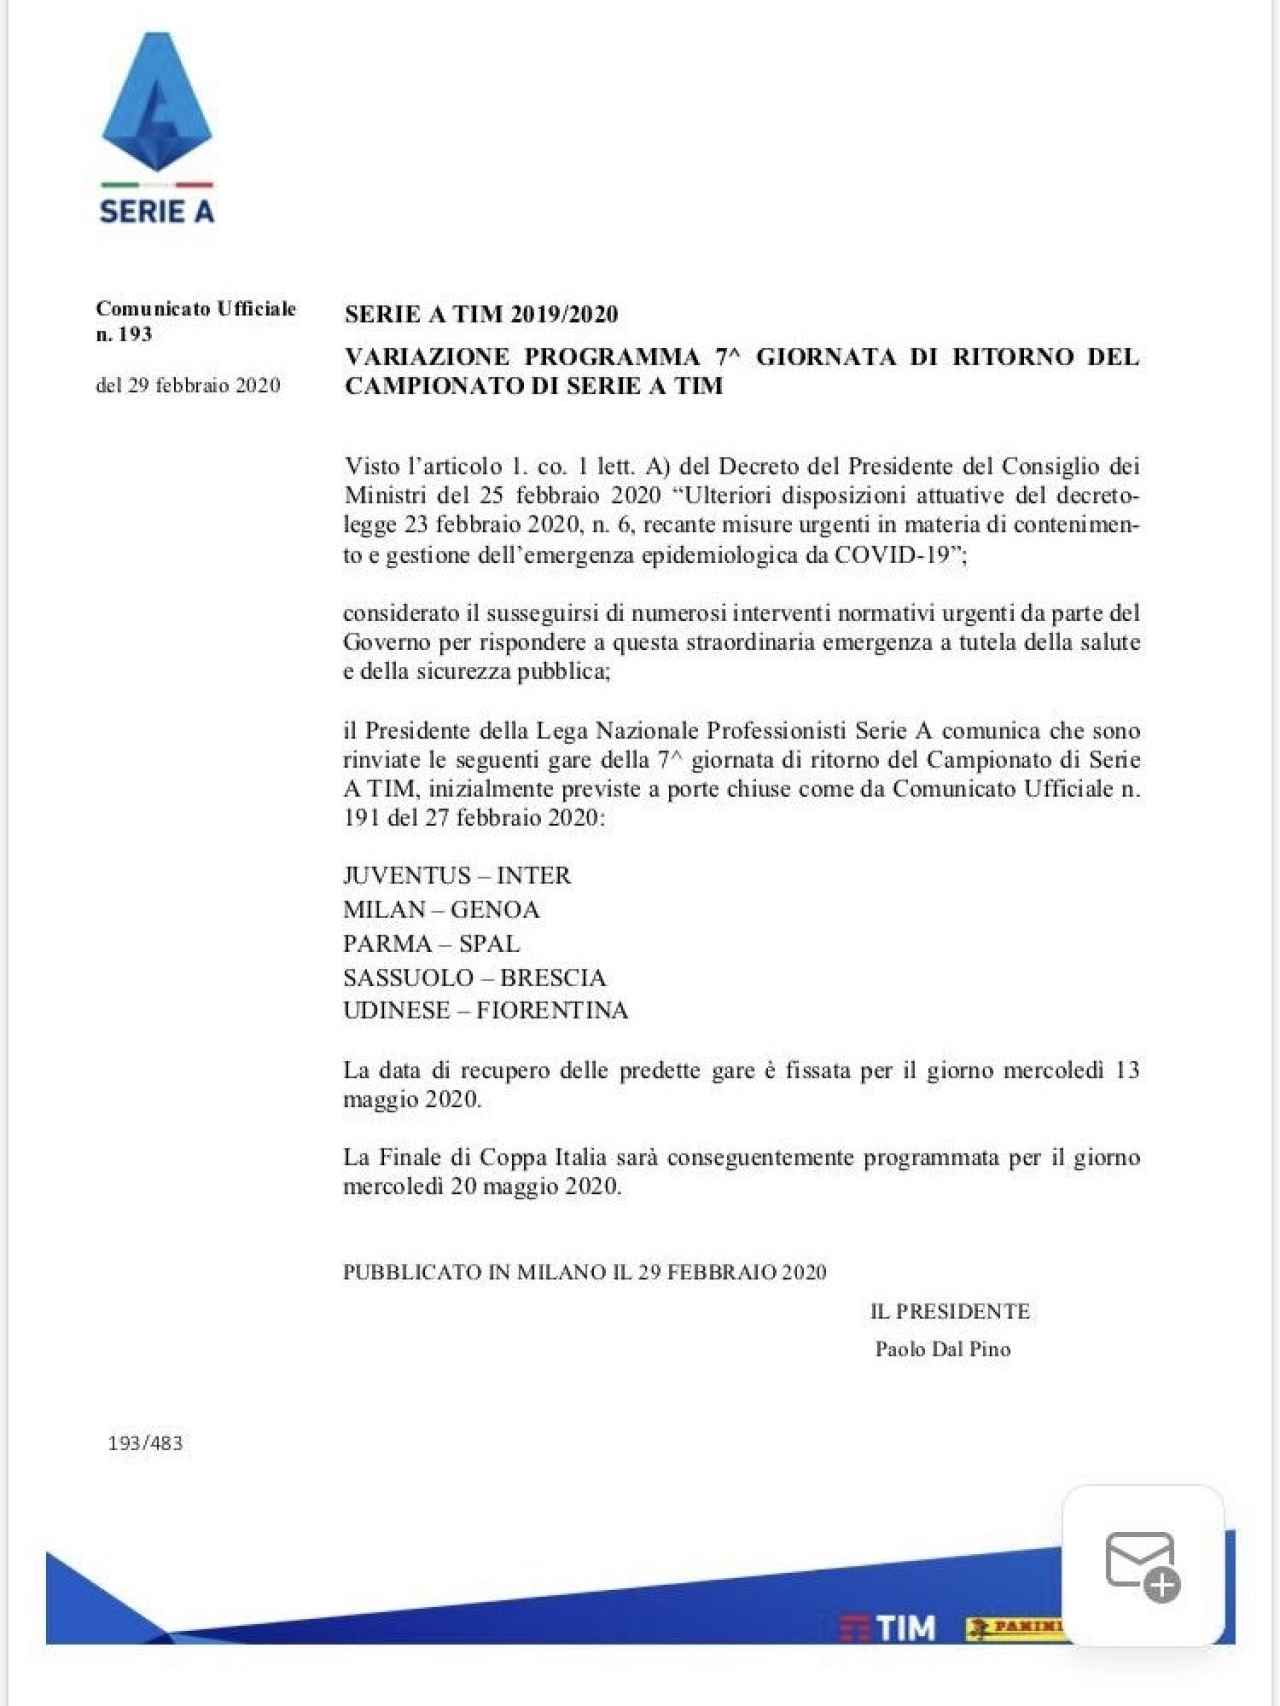 El comunicado de la Serie A anunciando el aplazamiento de los partidos